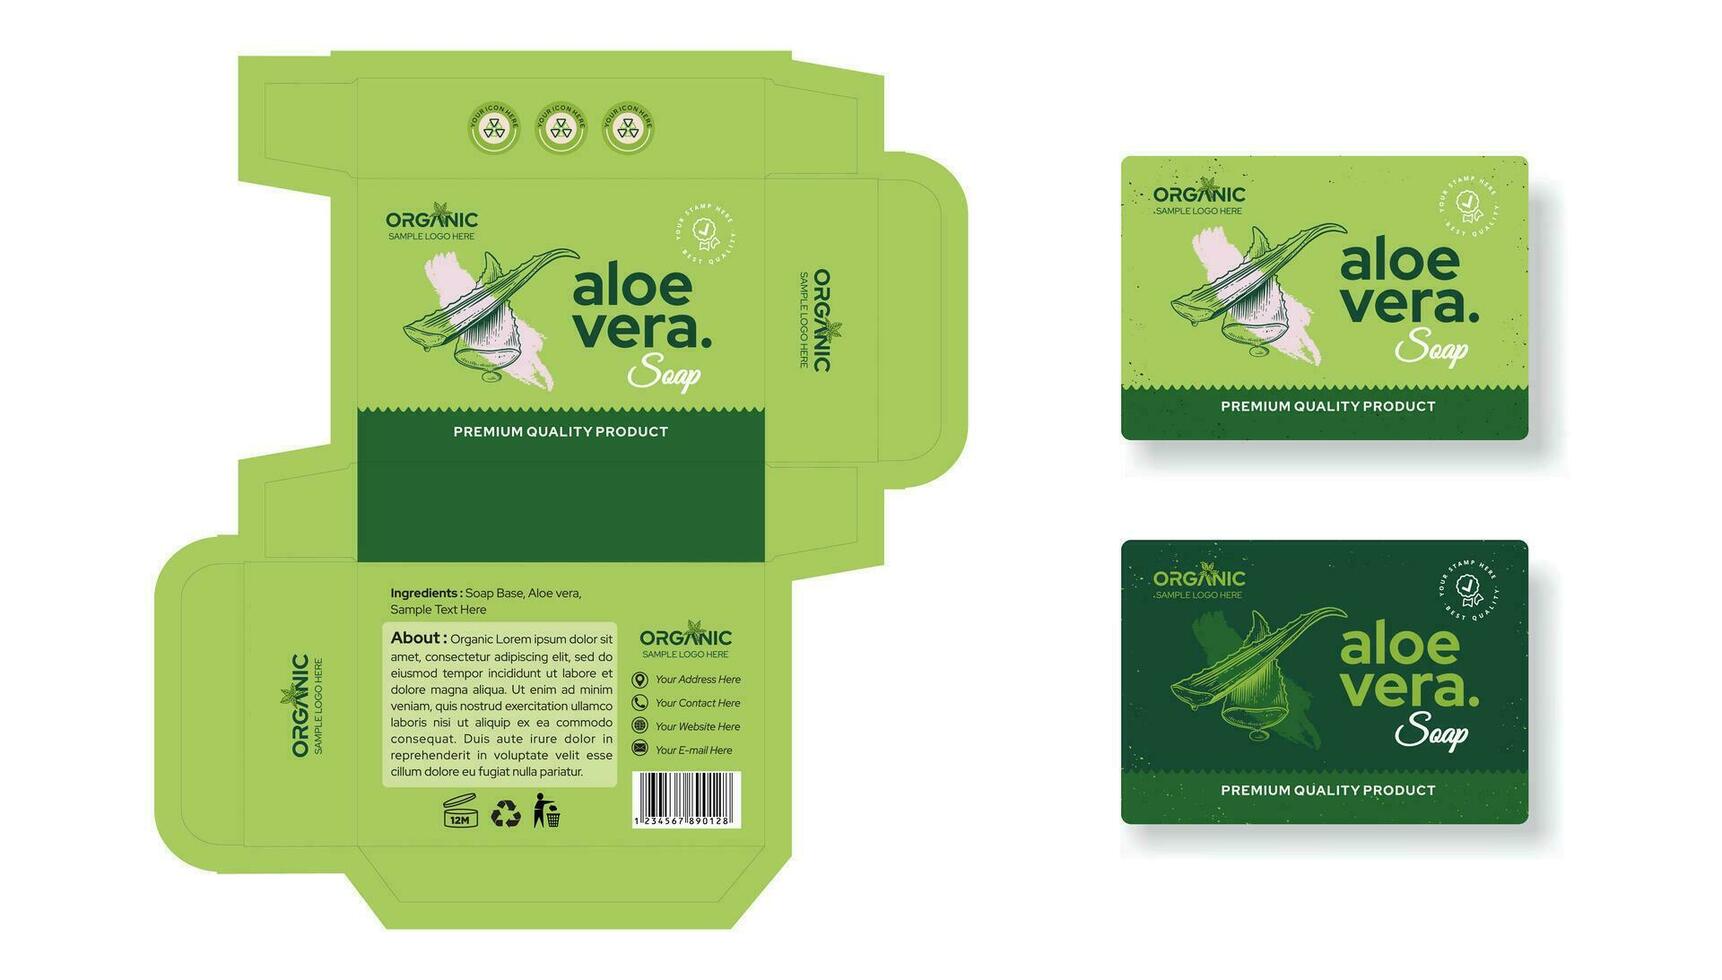 Aloe vera Soap Box Packaging Design, alo vera sticker, alo vera soap box label design editable vector file download